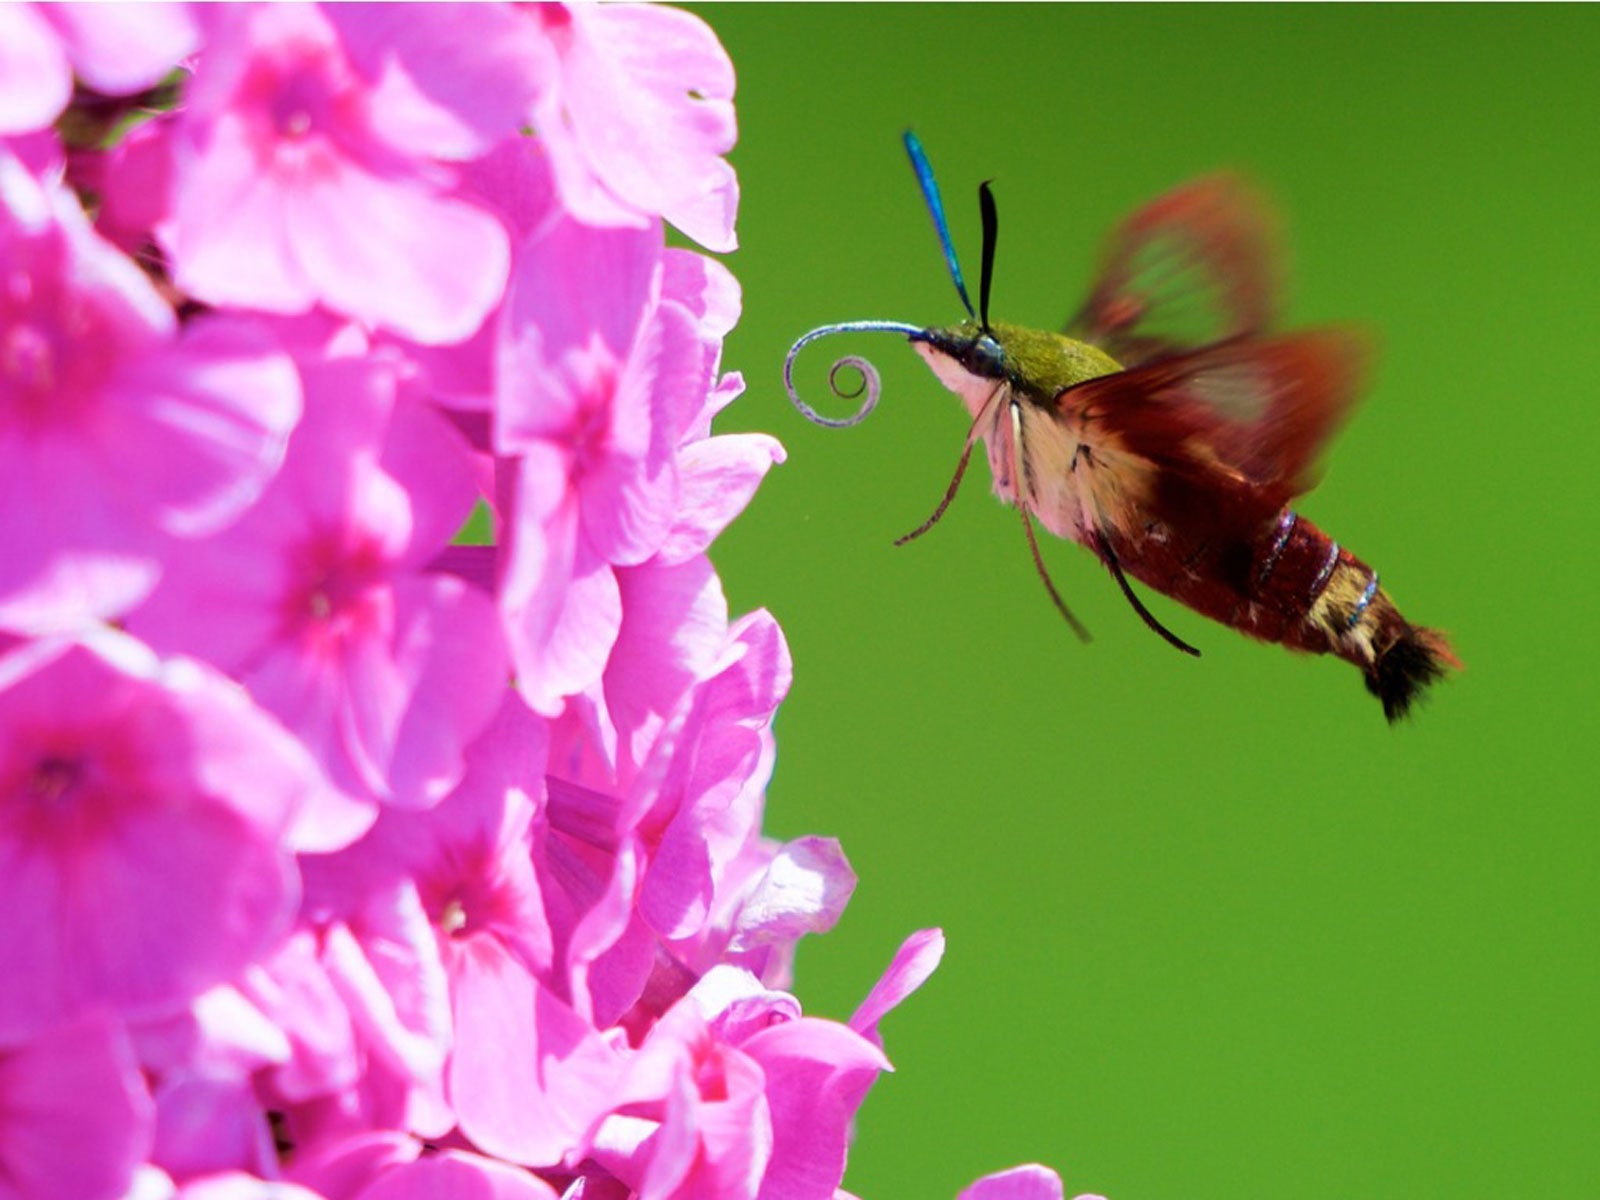 hummingbird moth approaching a flower